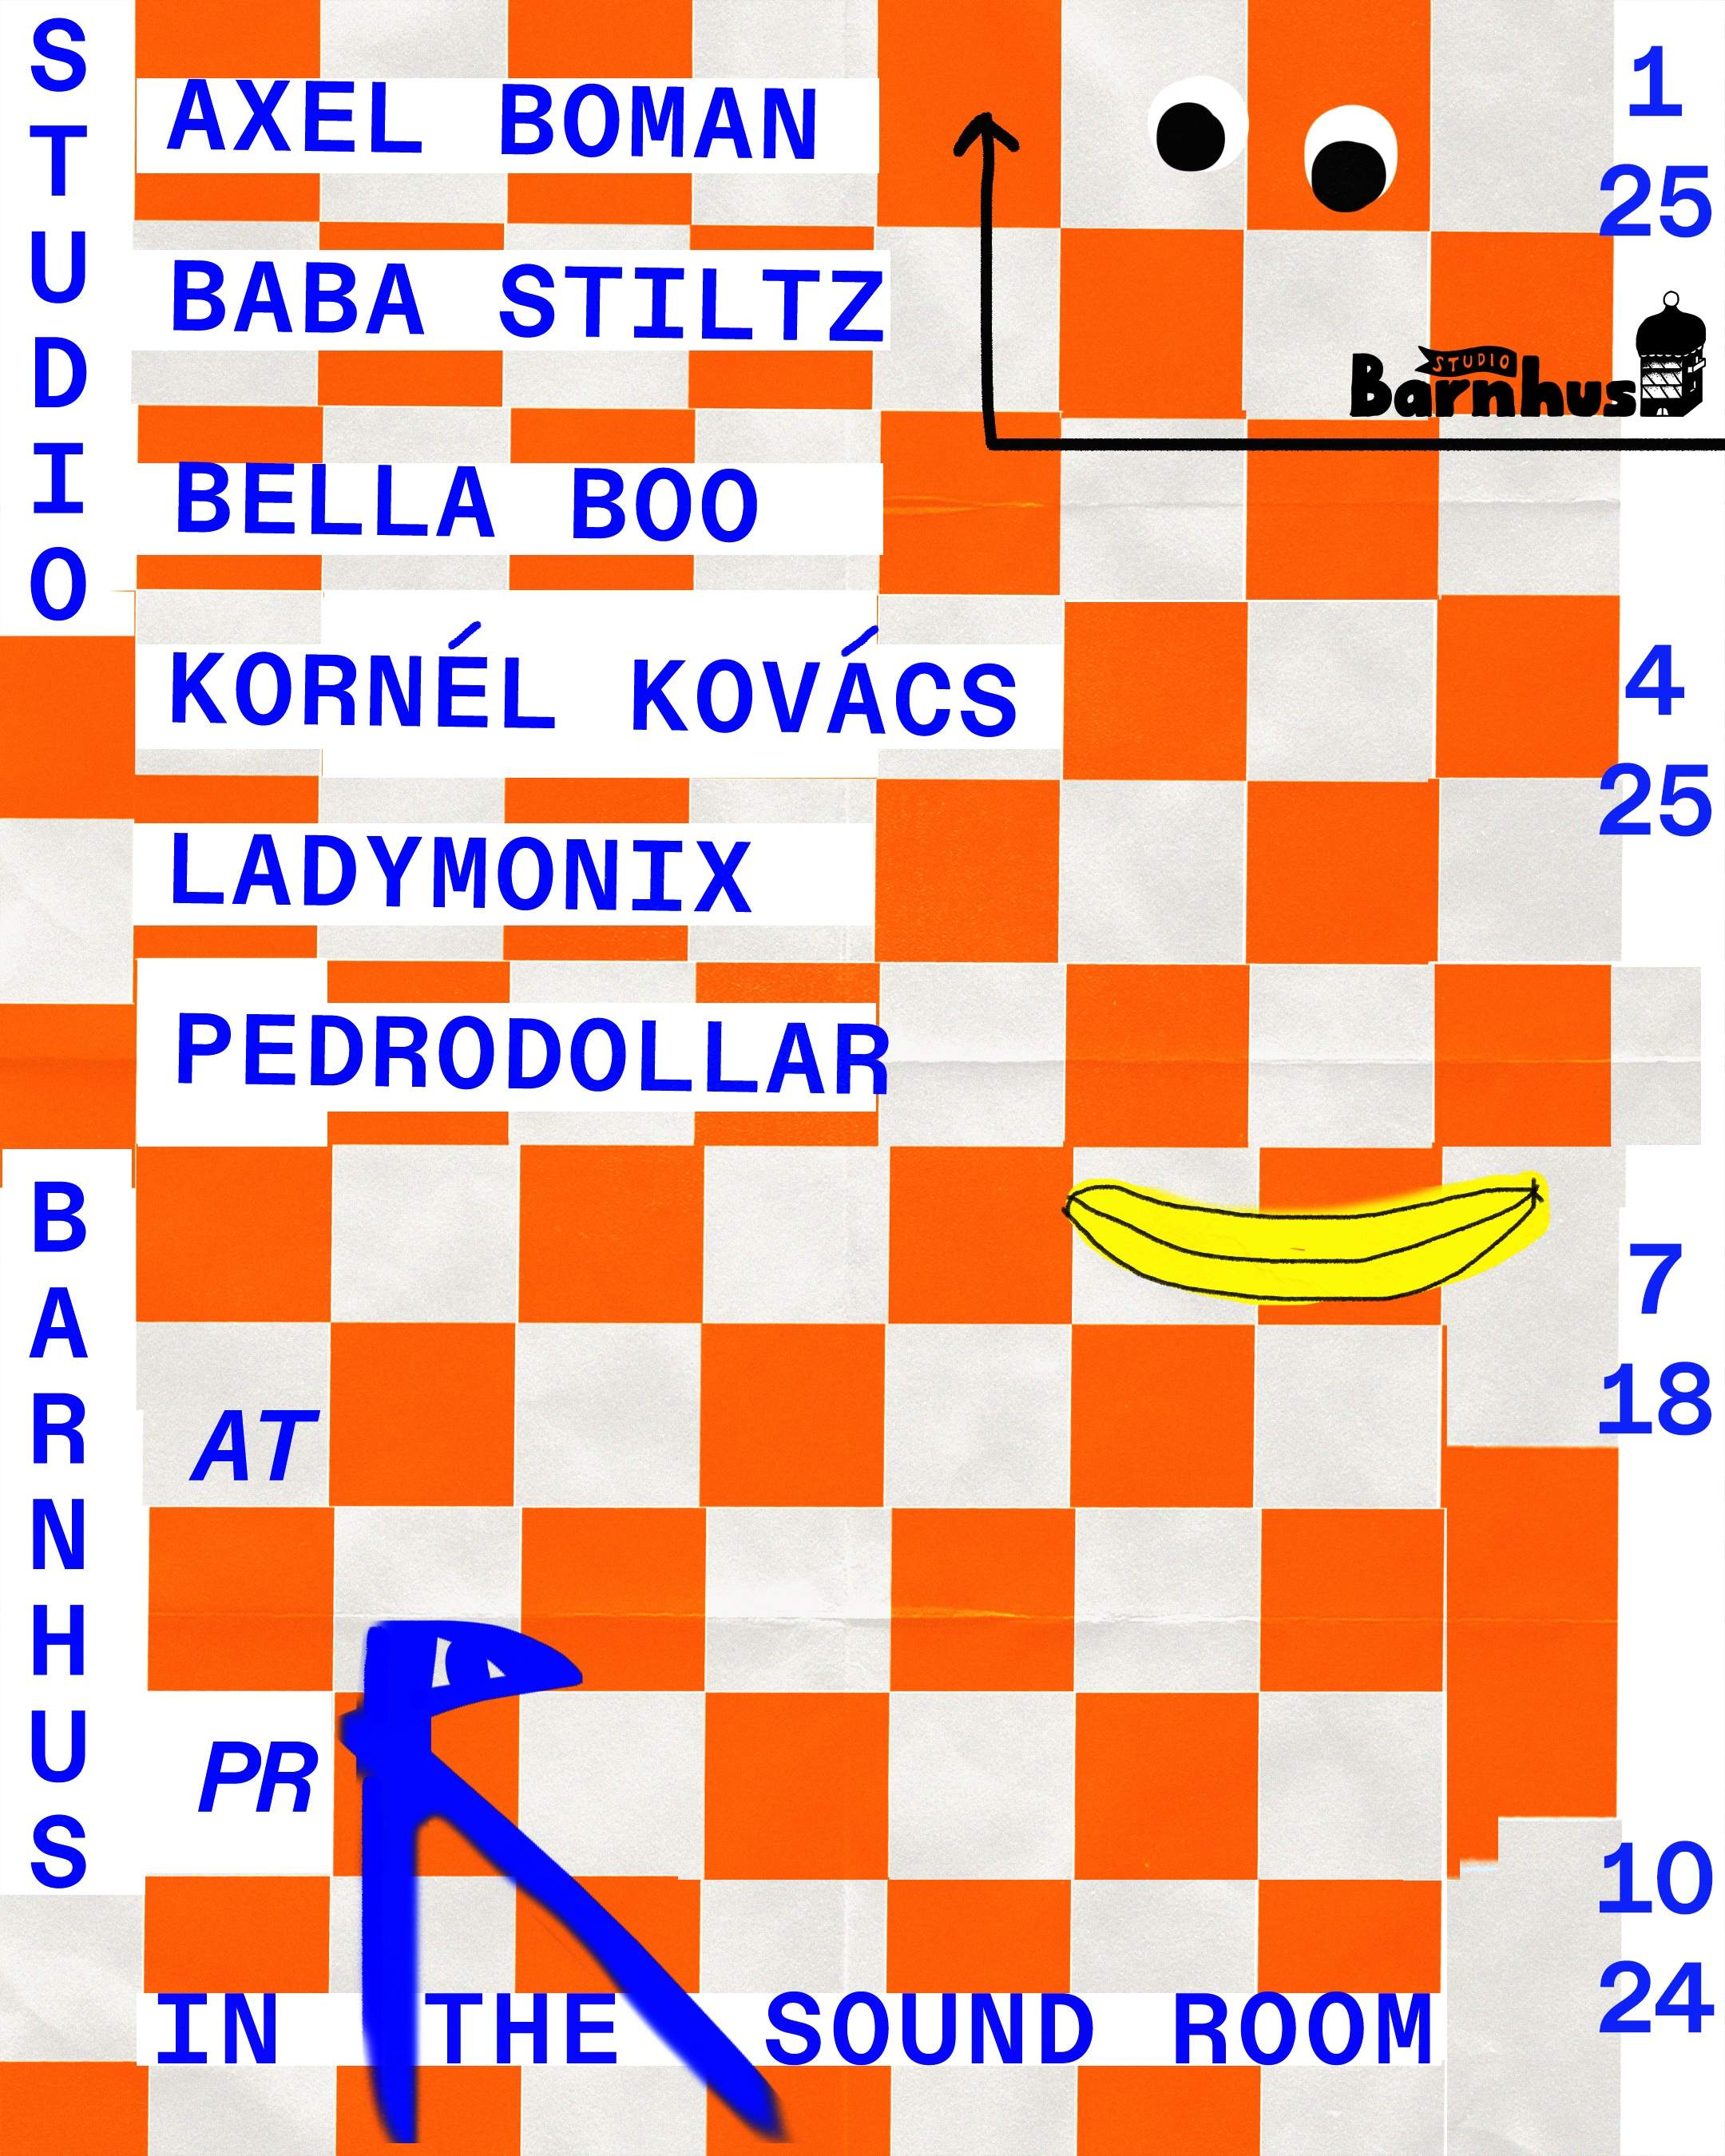 Studio Barnhus: Baba Stiltz + Pedrodollar - フライヤー表